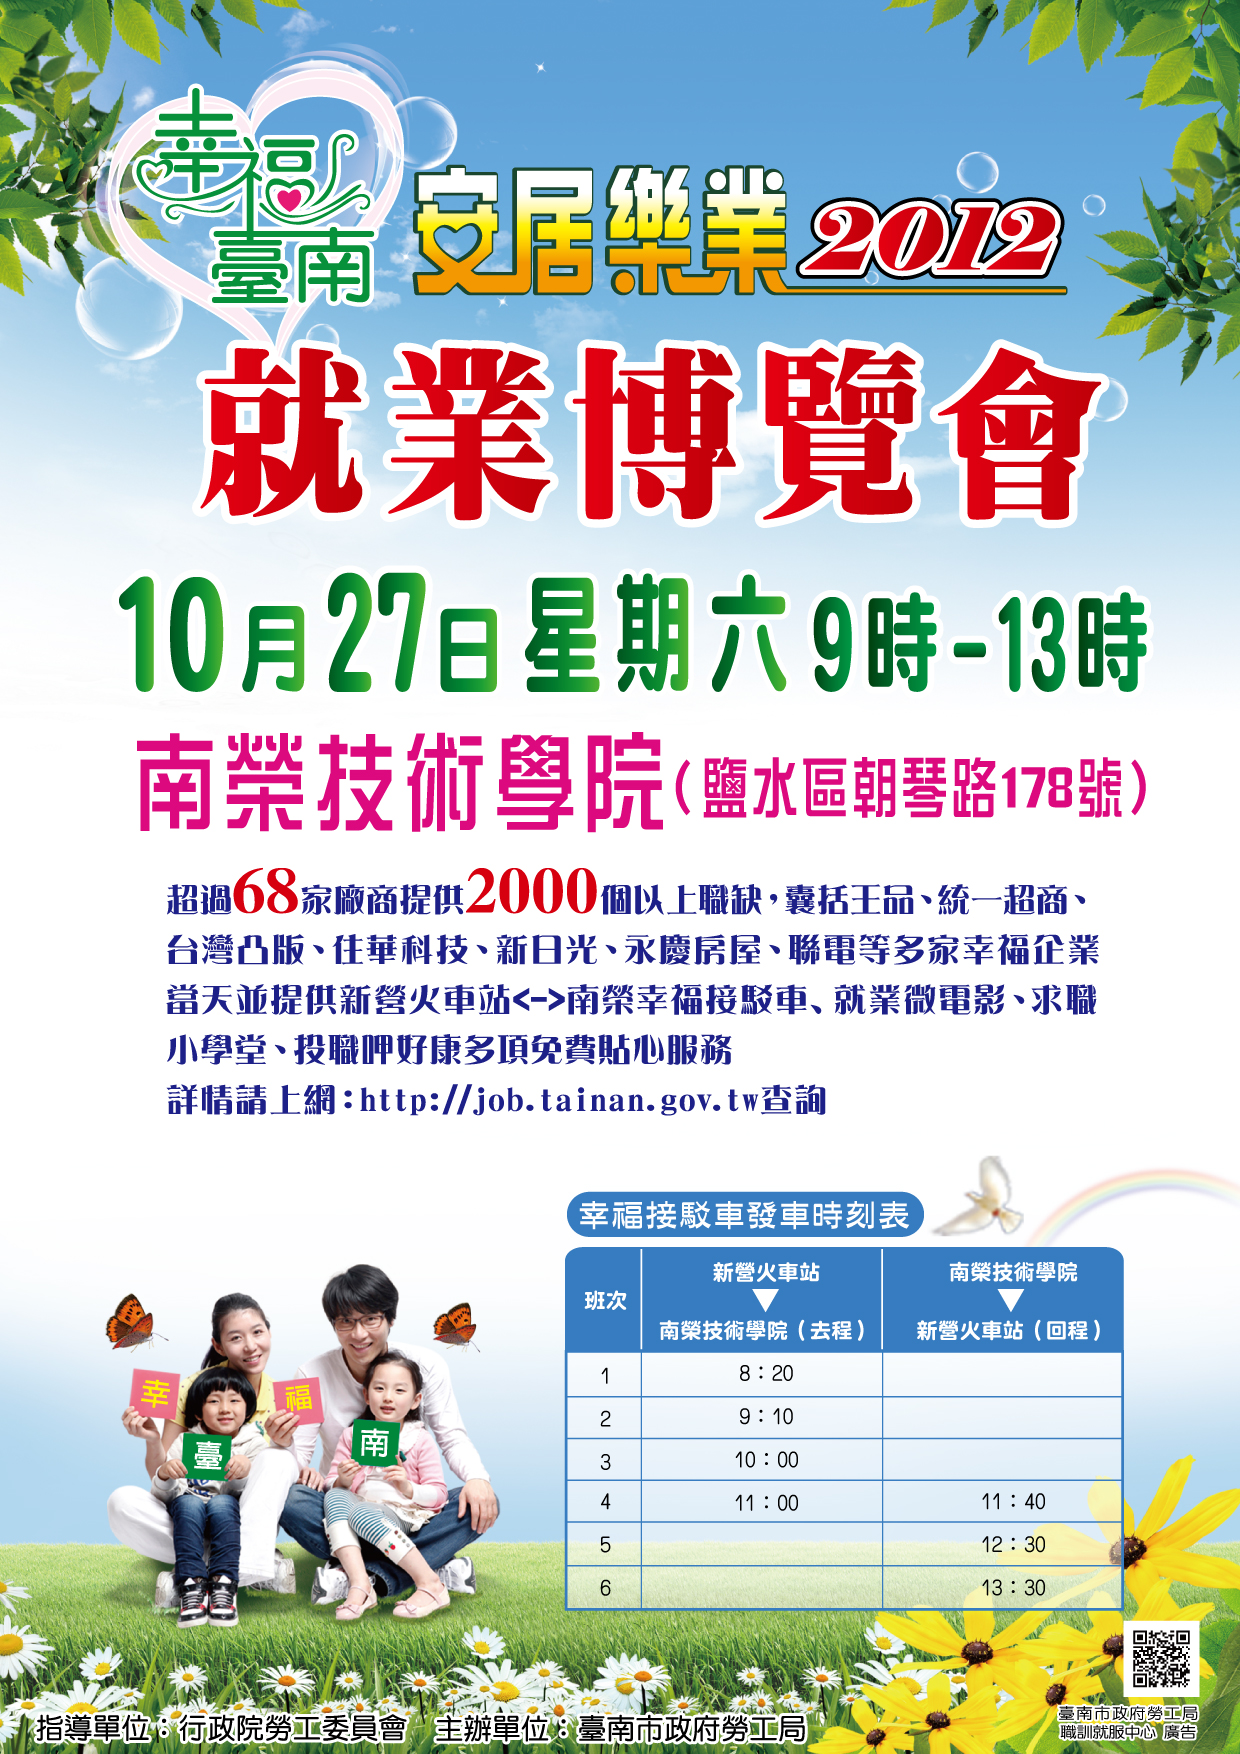 就業博覽會 | 臺南市政府勞工局職訓就服中心